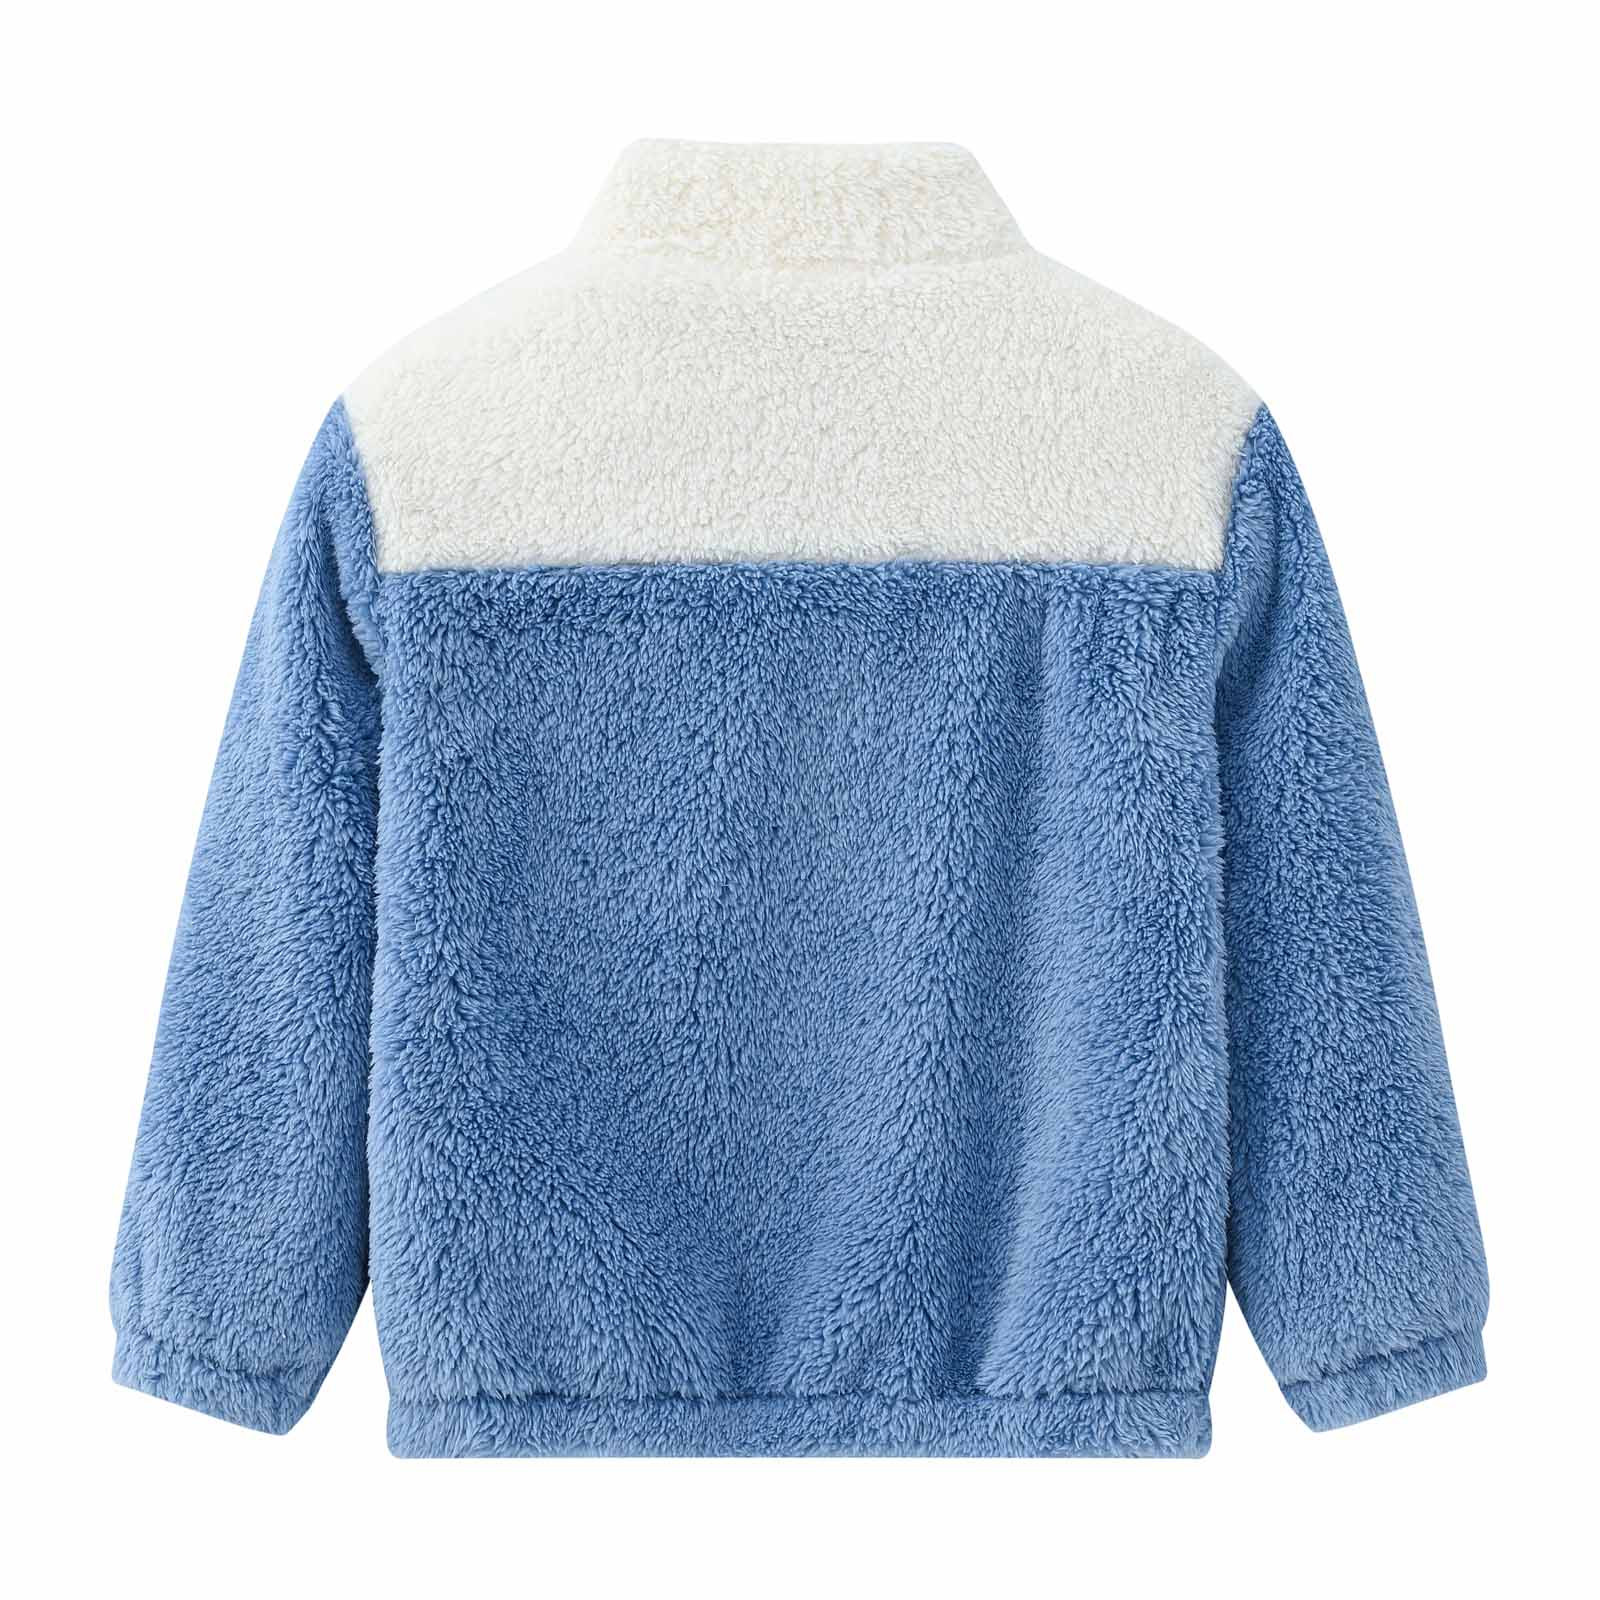 YYDGH Girls Zipper Jacket Fuzzy Sweatshirt Long Sleeve Casual Cozy Fleece Sherpa Outwear Coat Full-Zip Rainbow Jackets(Blue,5-6 Years) - image 4 of 8